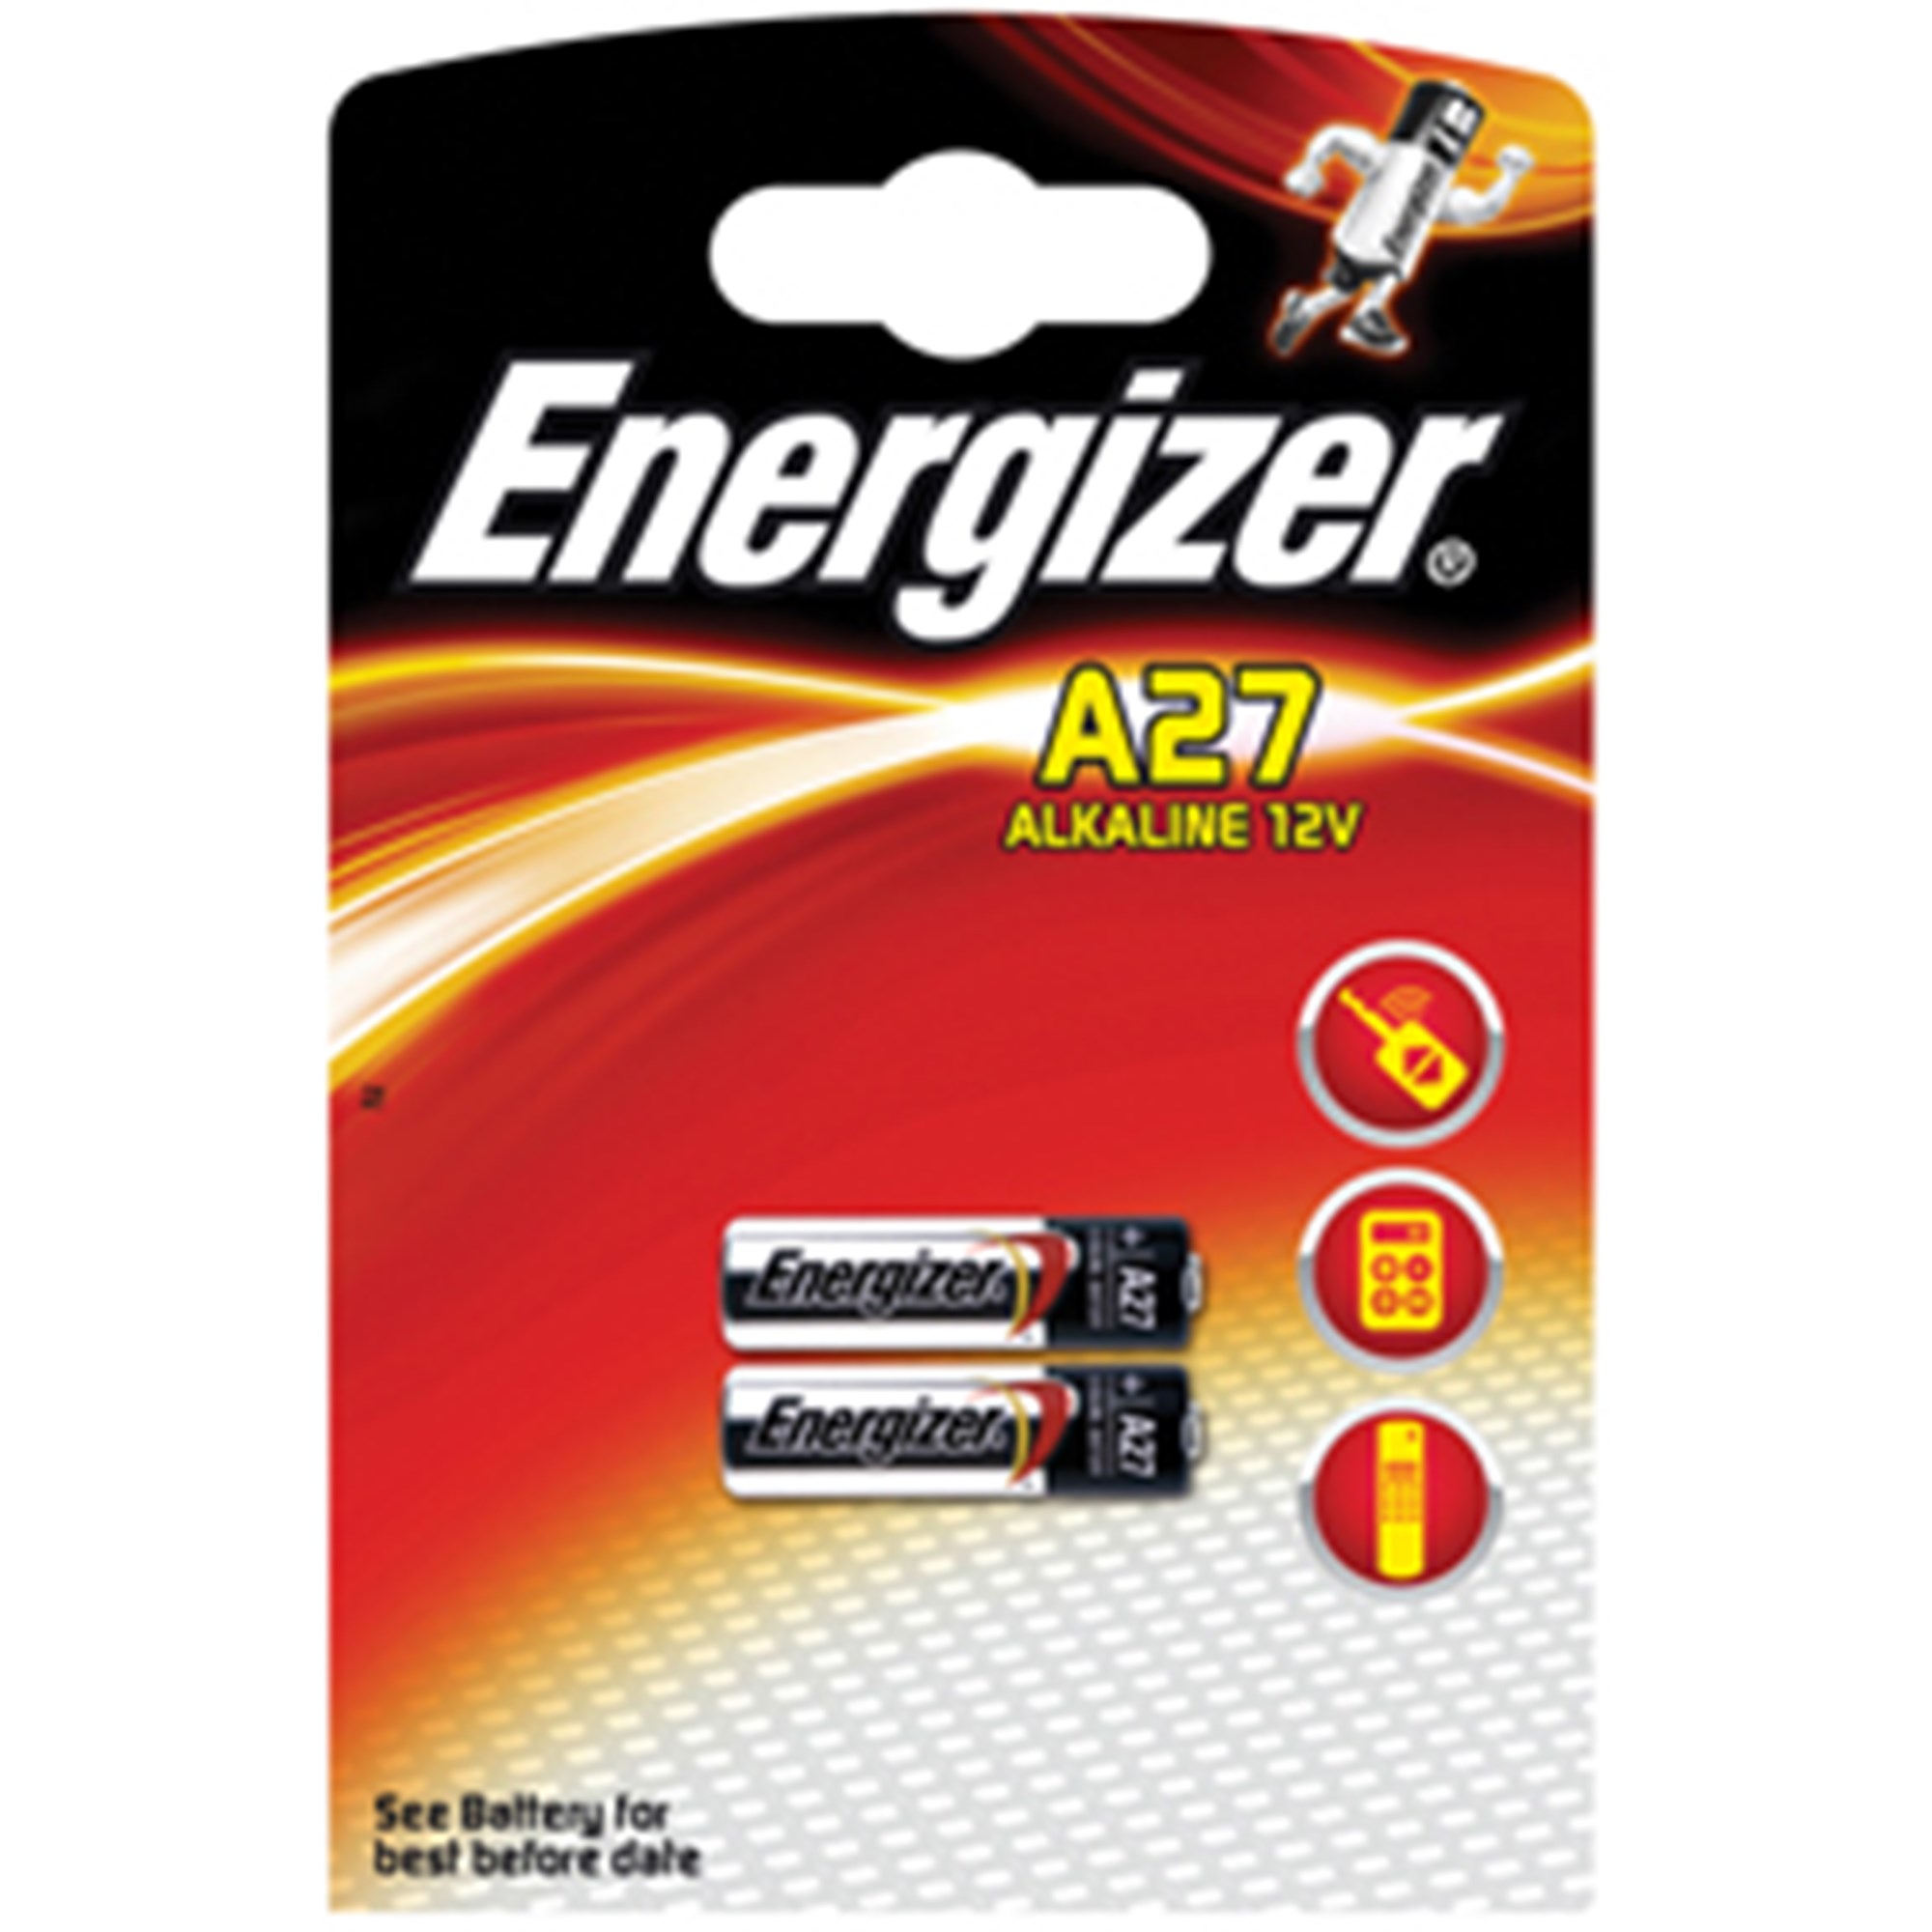 Energizer Alkaline A27 (2)